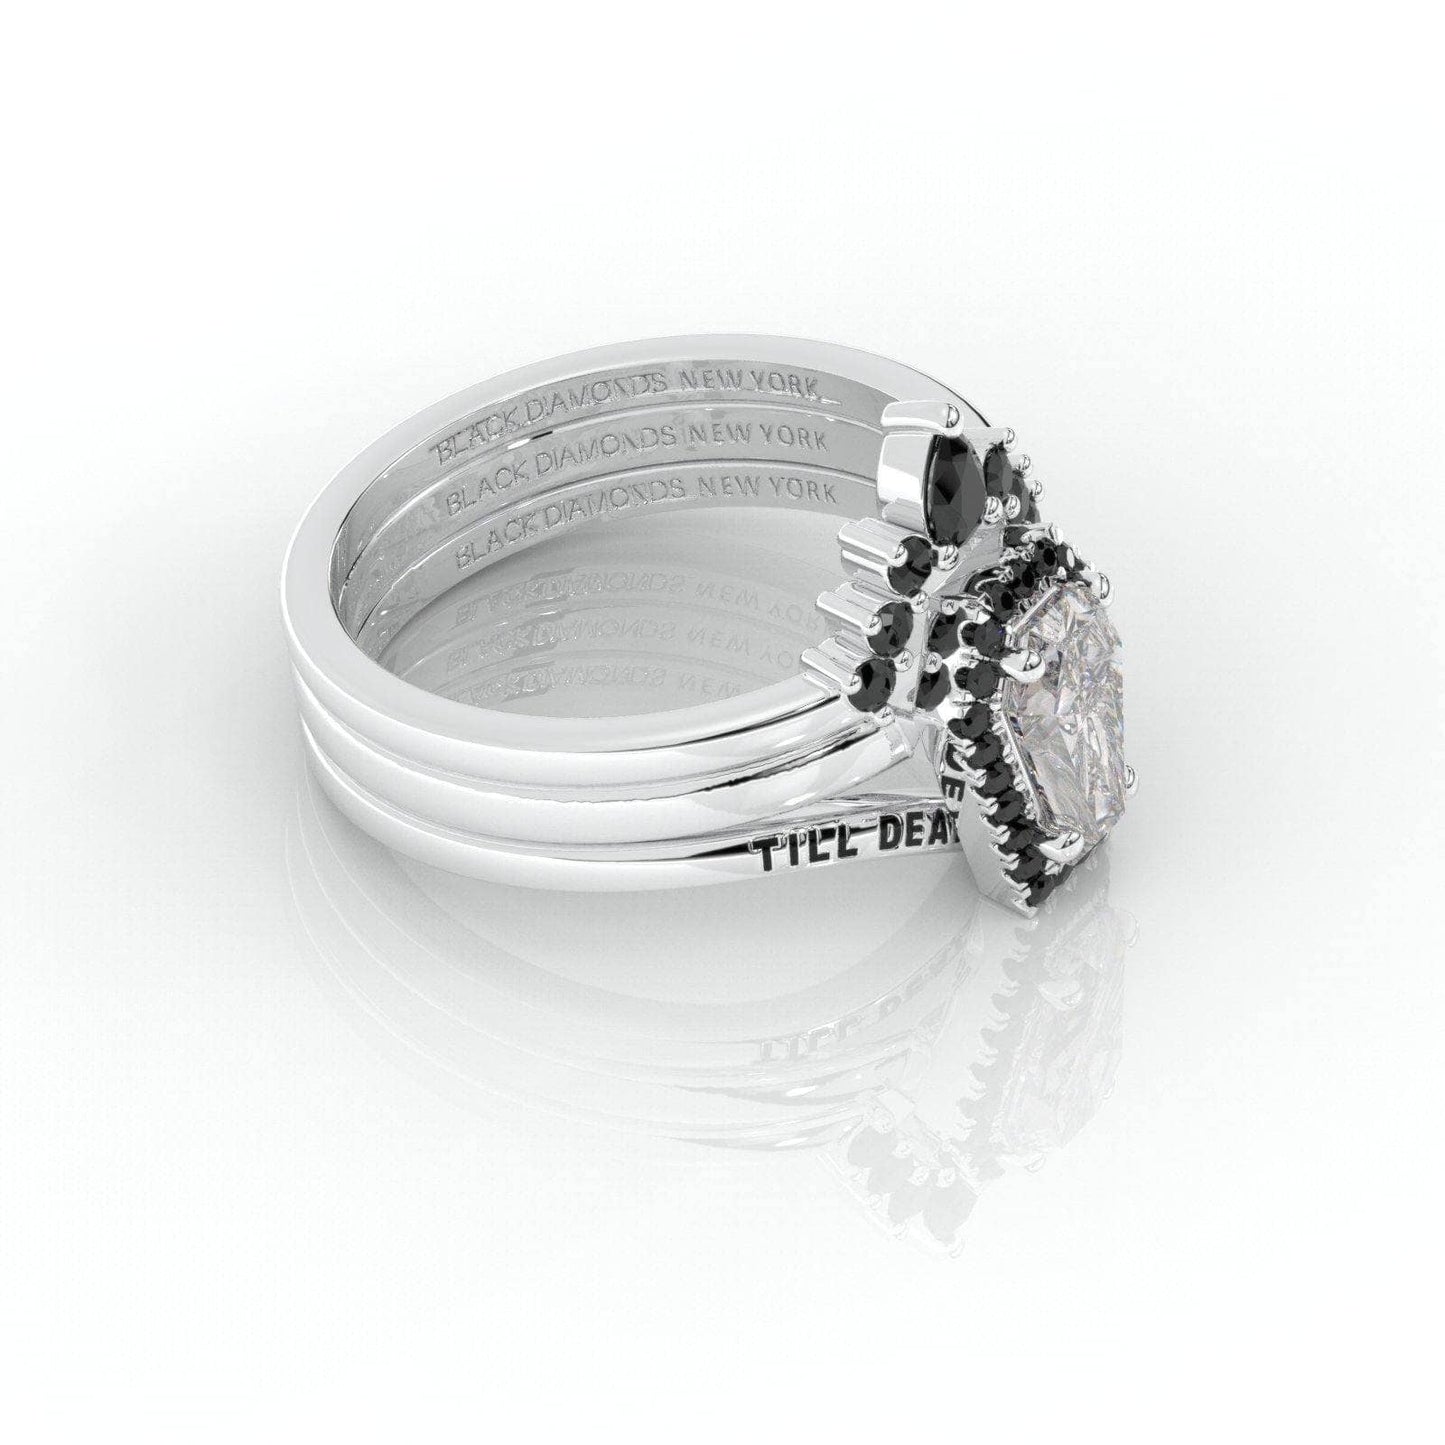 Till Death Do Us Part Rings- Rare Coffin Cut Moissanite 14k White Gold Ring Set - Black Diamonds New York